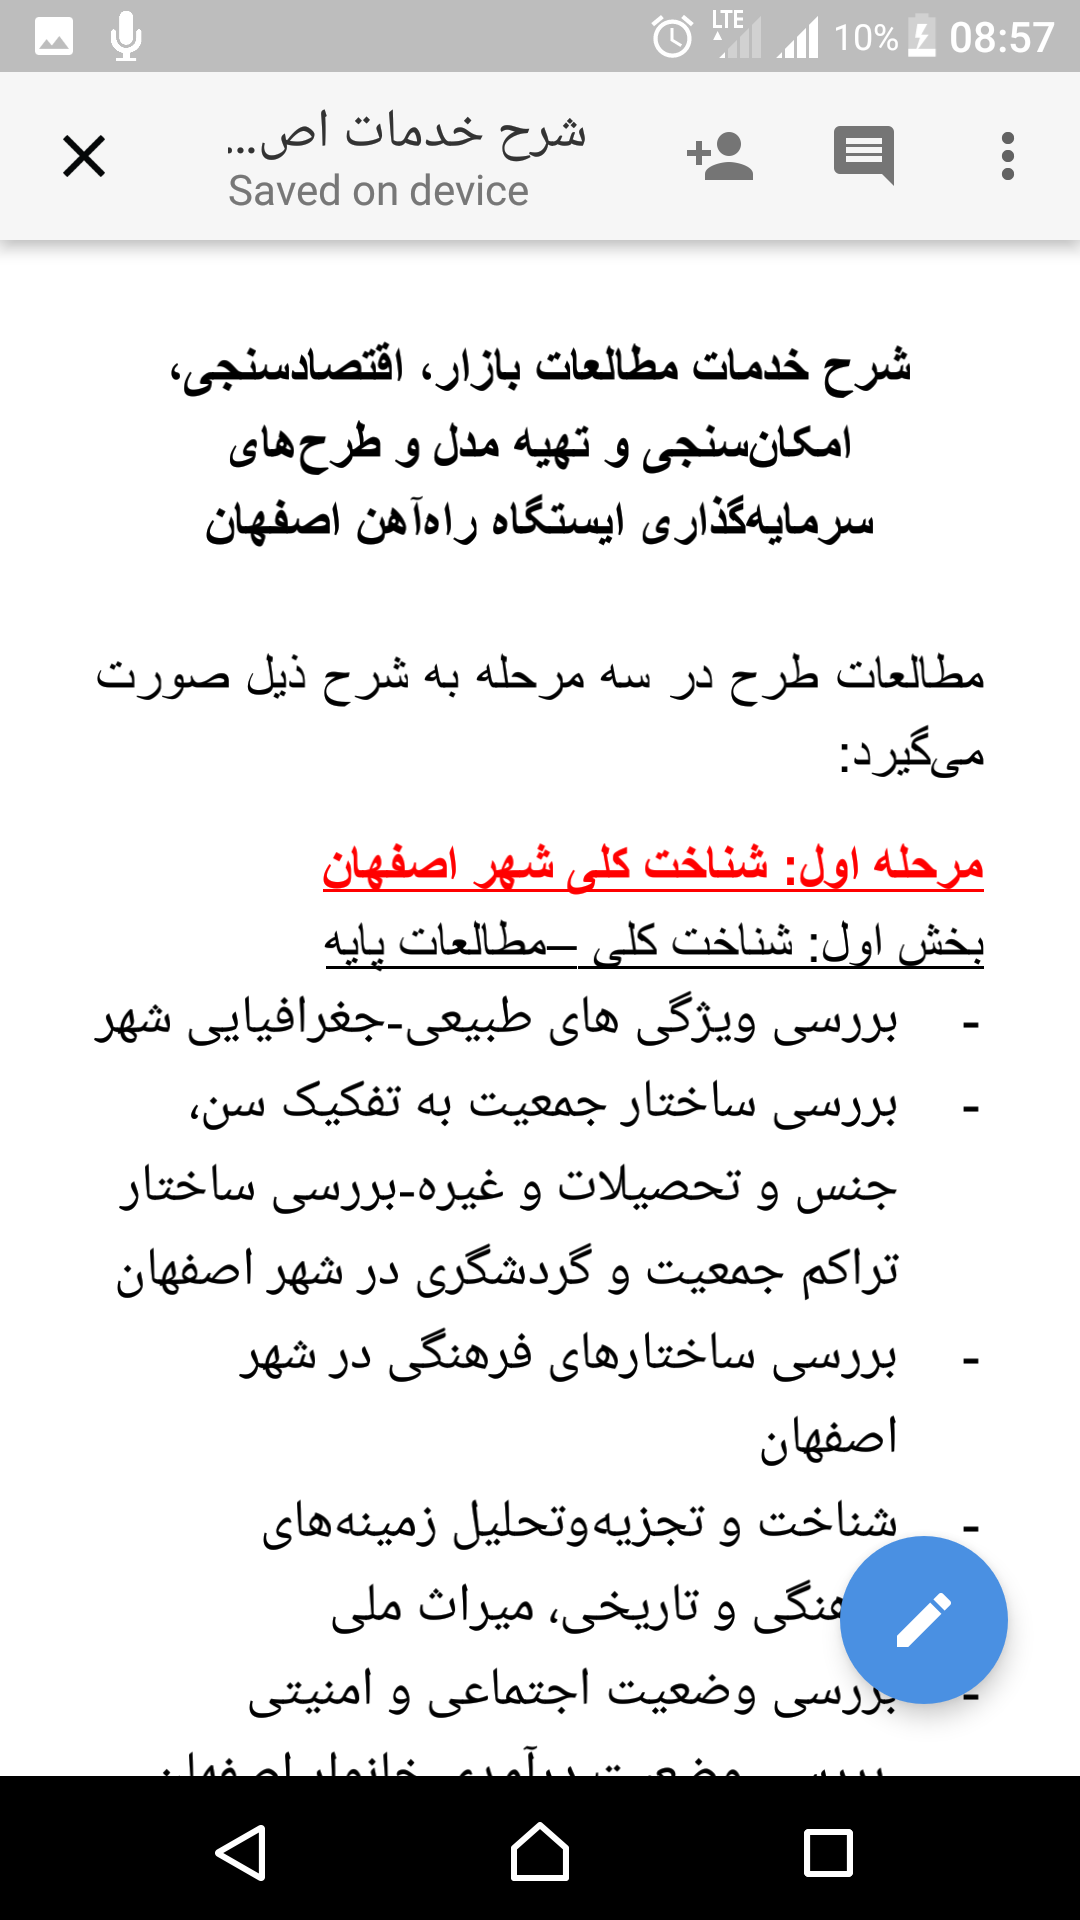 ویژگی های شهر اصفهان به انگلیسی
